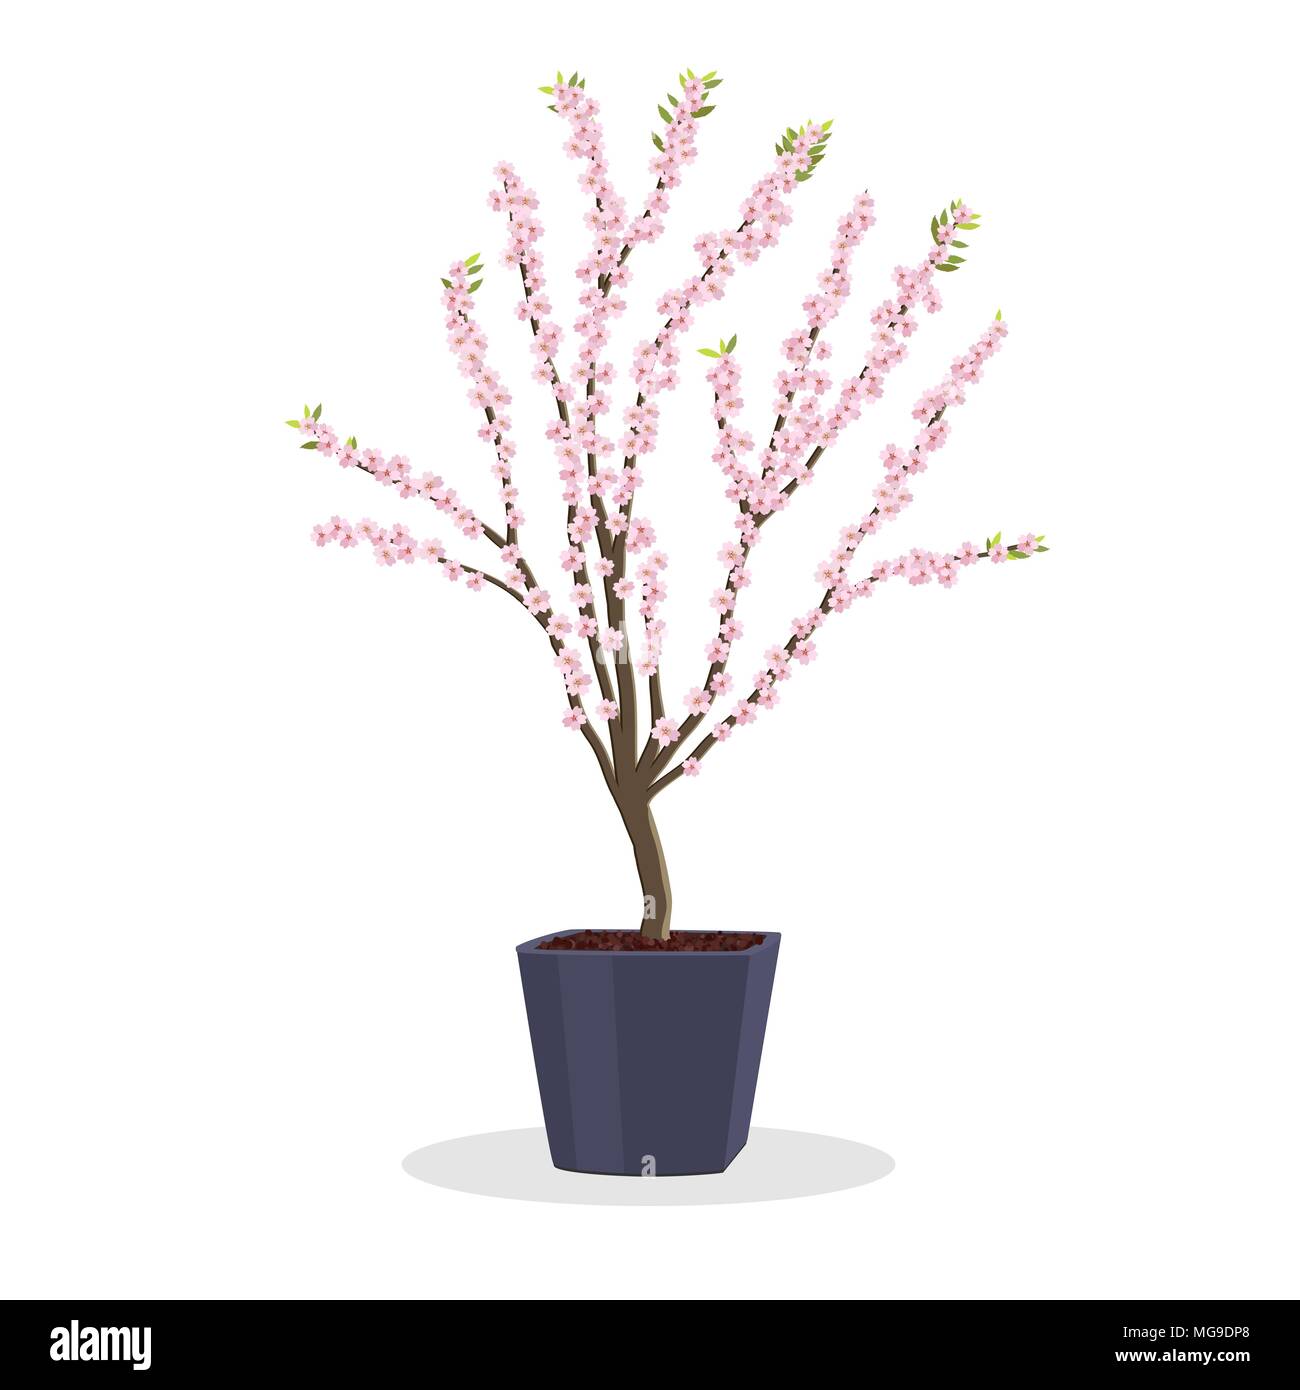 Kleine Pflaumenbaum in voller Blüte. Zwerg Frucht Baum auf dem Platz Blumentopf wachsen. Wachsenden Obstbäume im Container. Frühjahr blühen. Auf weiß isoliert. Gard Stock Vektor